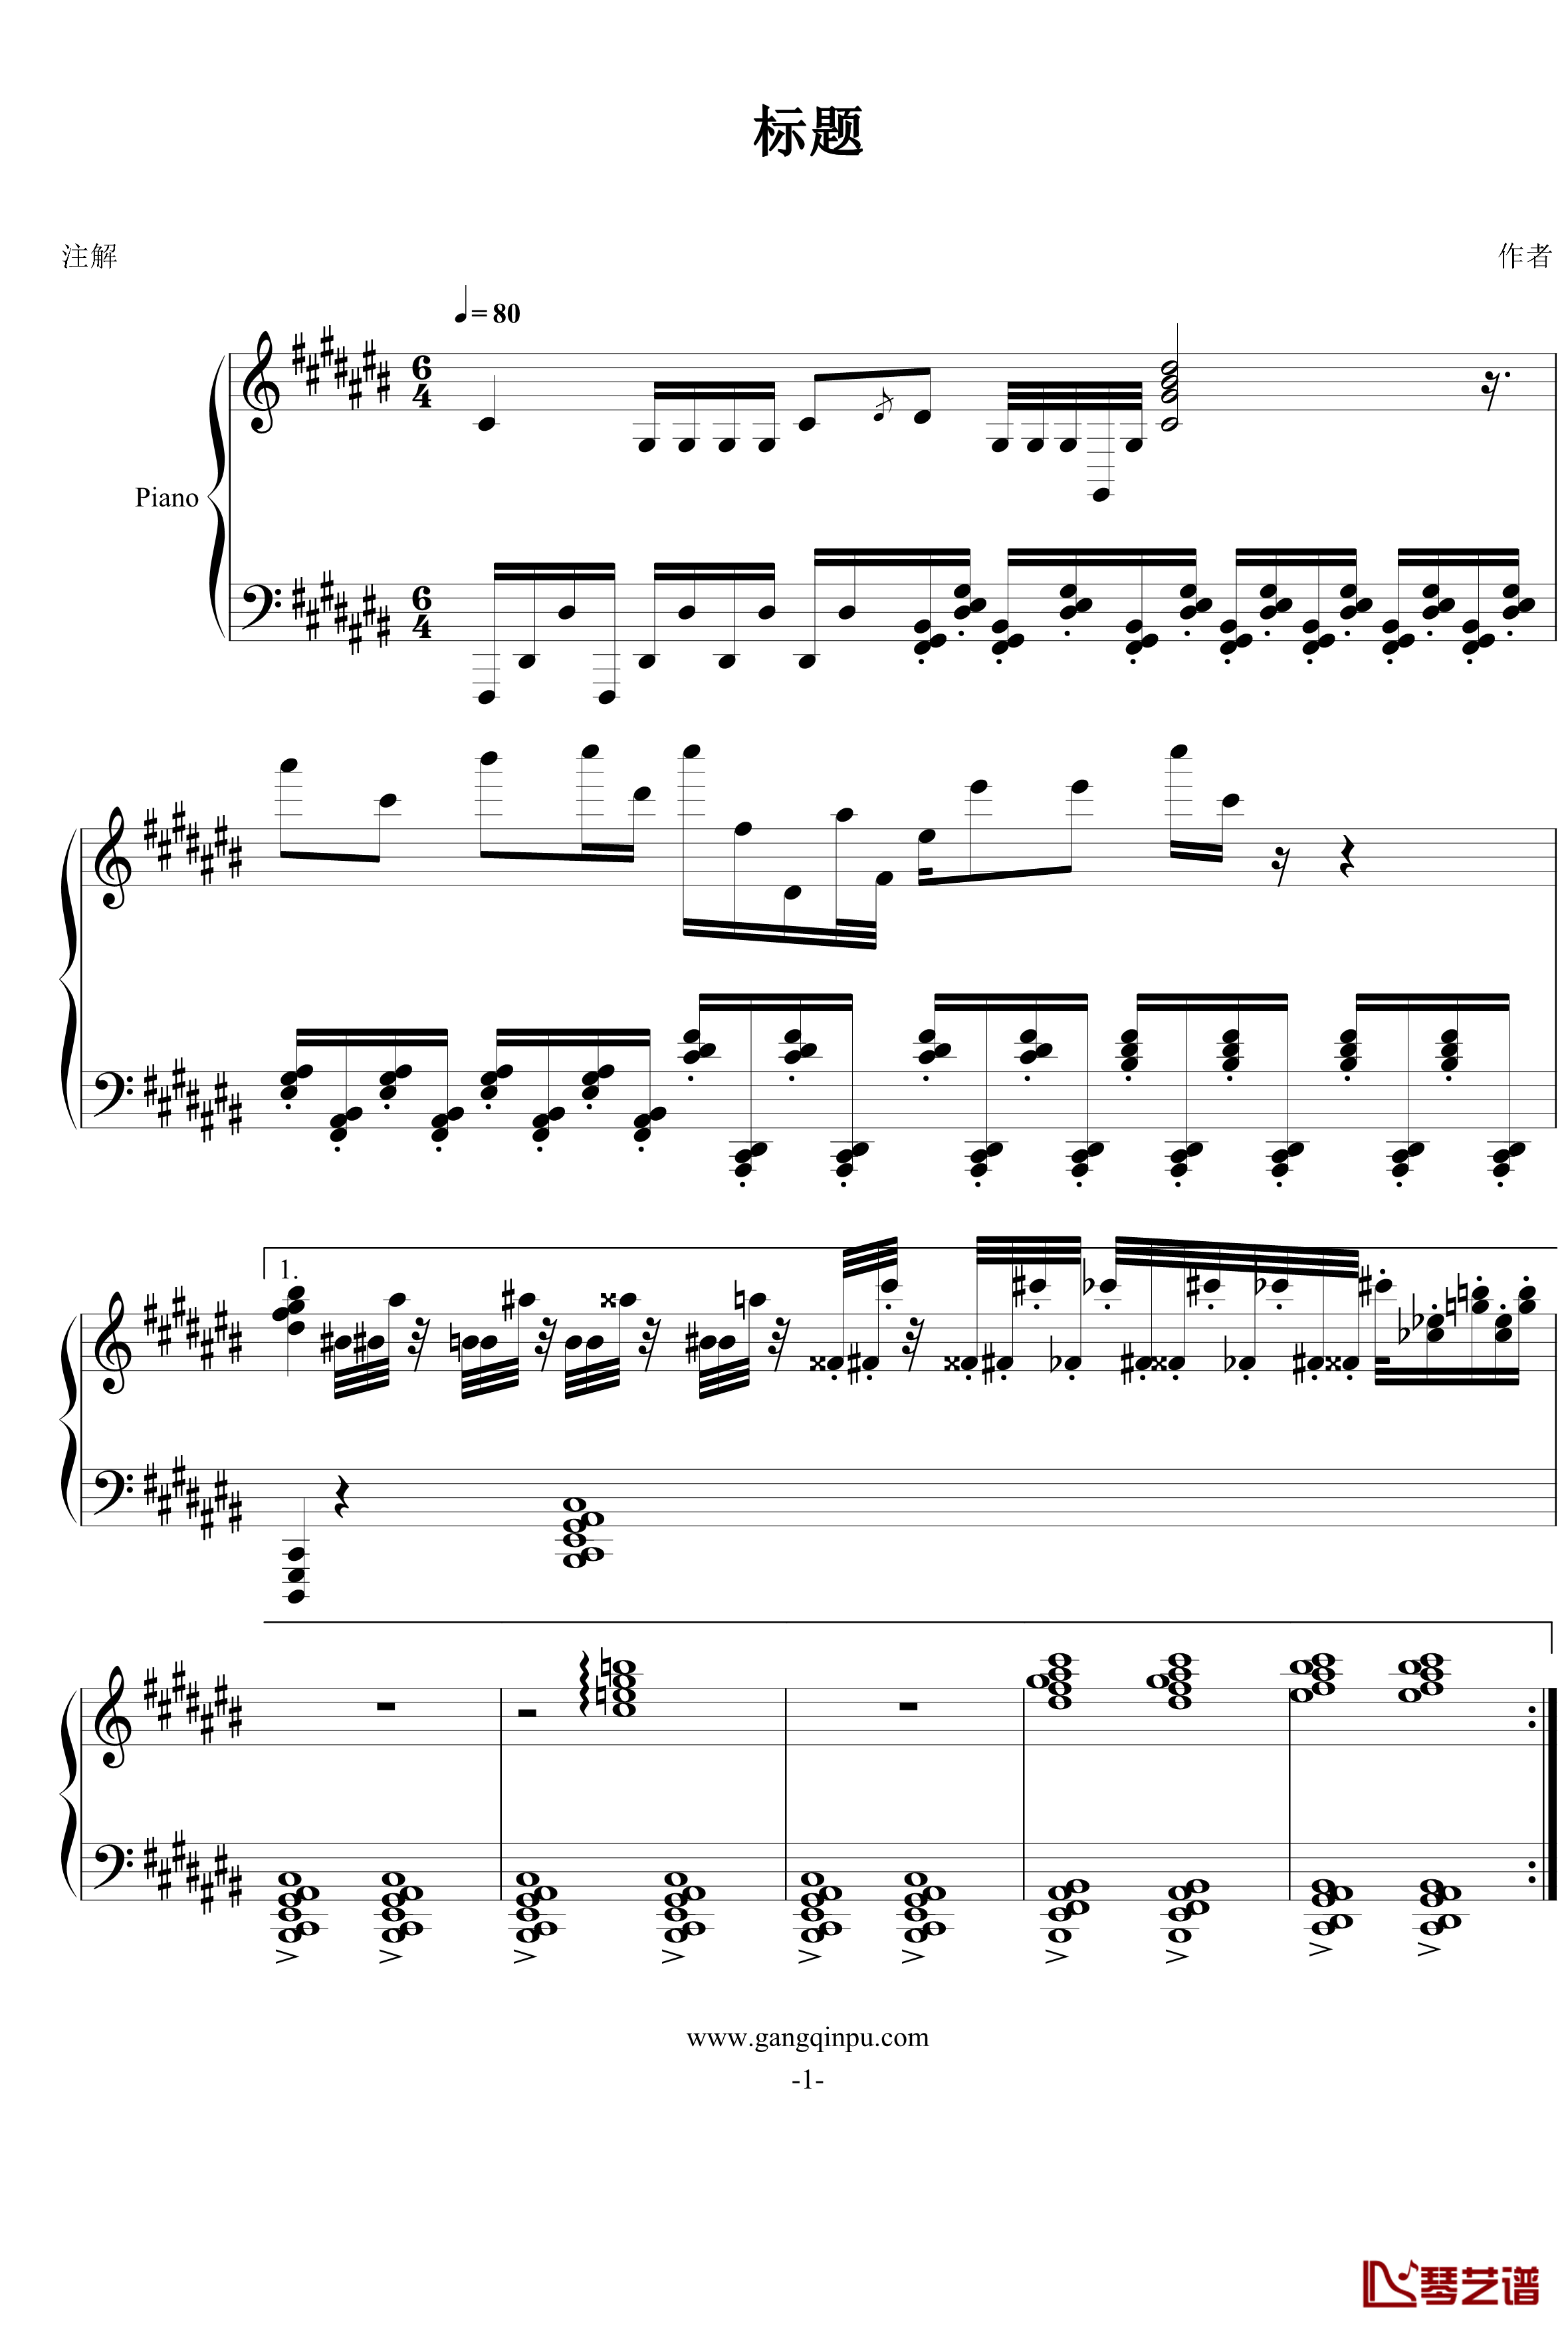 低落的预感钢琴谱-FIRSTONE1